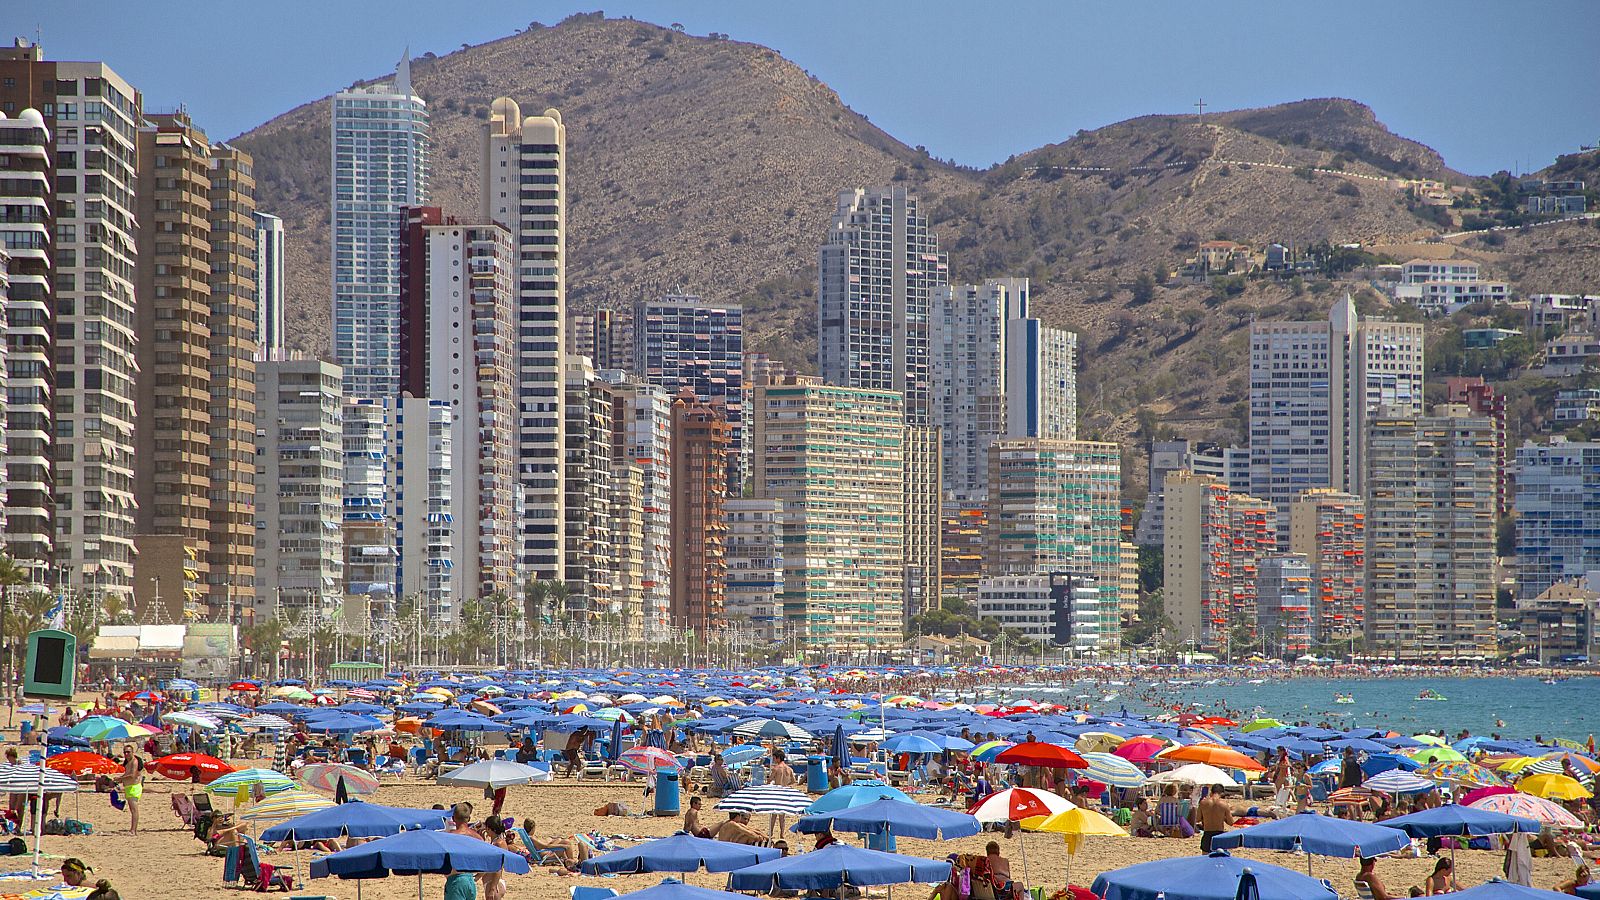 La playa de Benidorm (Alicante), repleta de turistas, en una imagen de archivo.